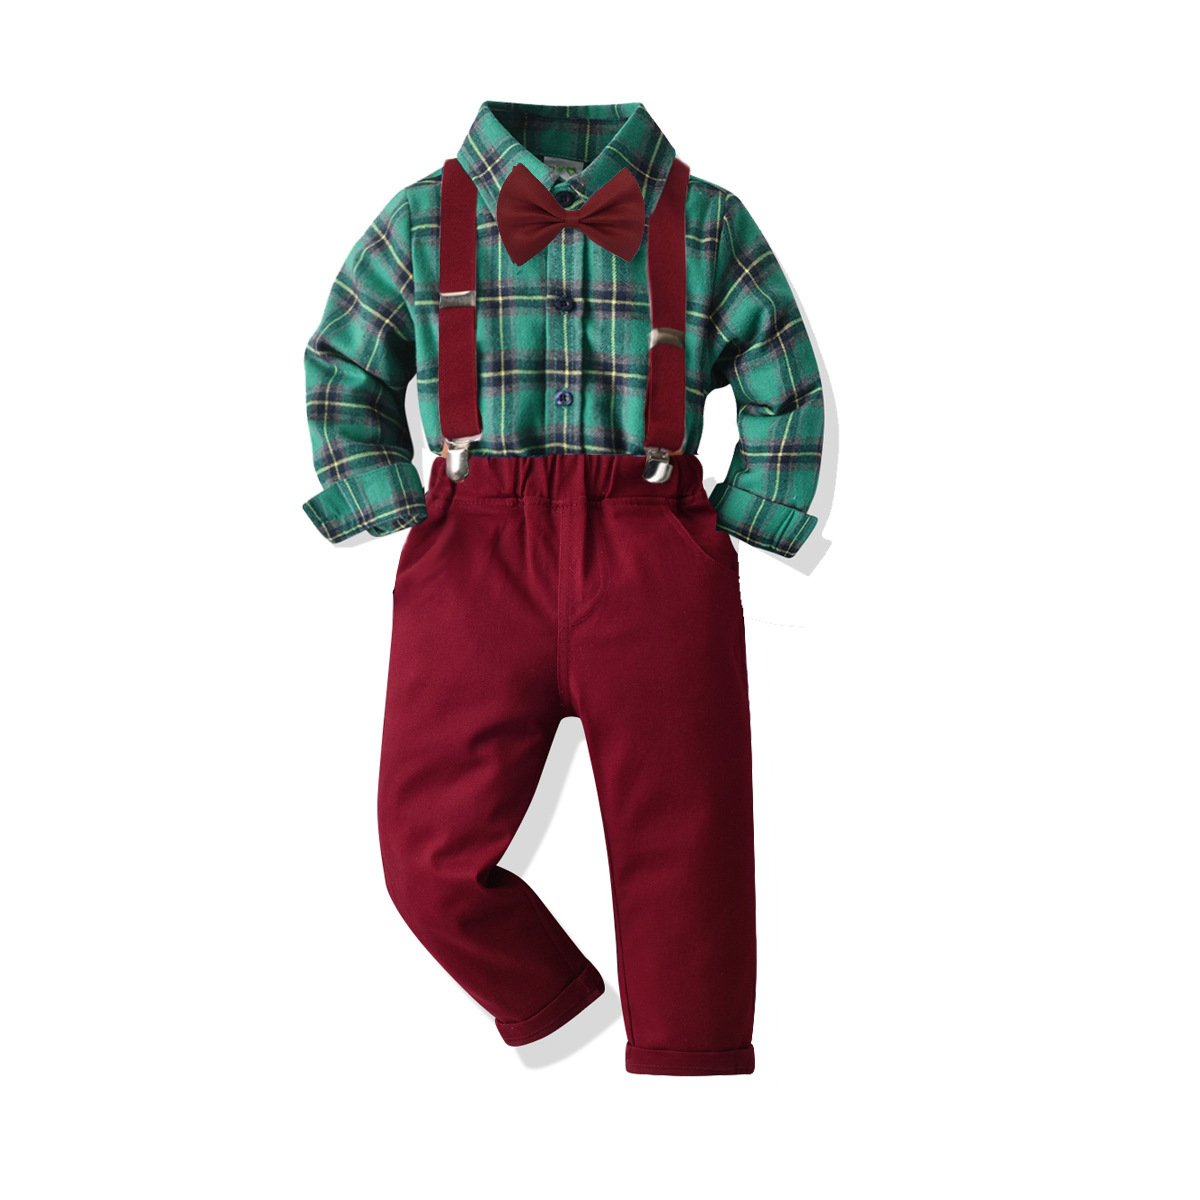 MOQ 2pcs Boys Green Plaid Long Sleeve Shirt Wine Red Suspenders Gentlemen Suit Boy Clothes Wholesale